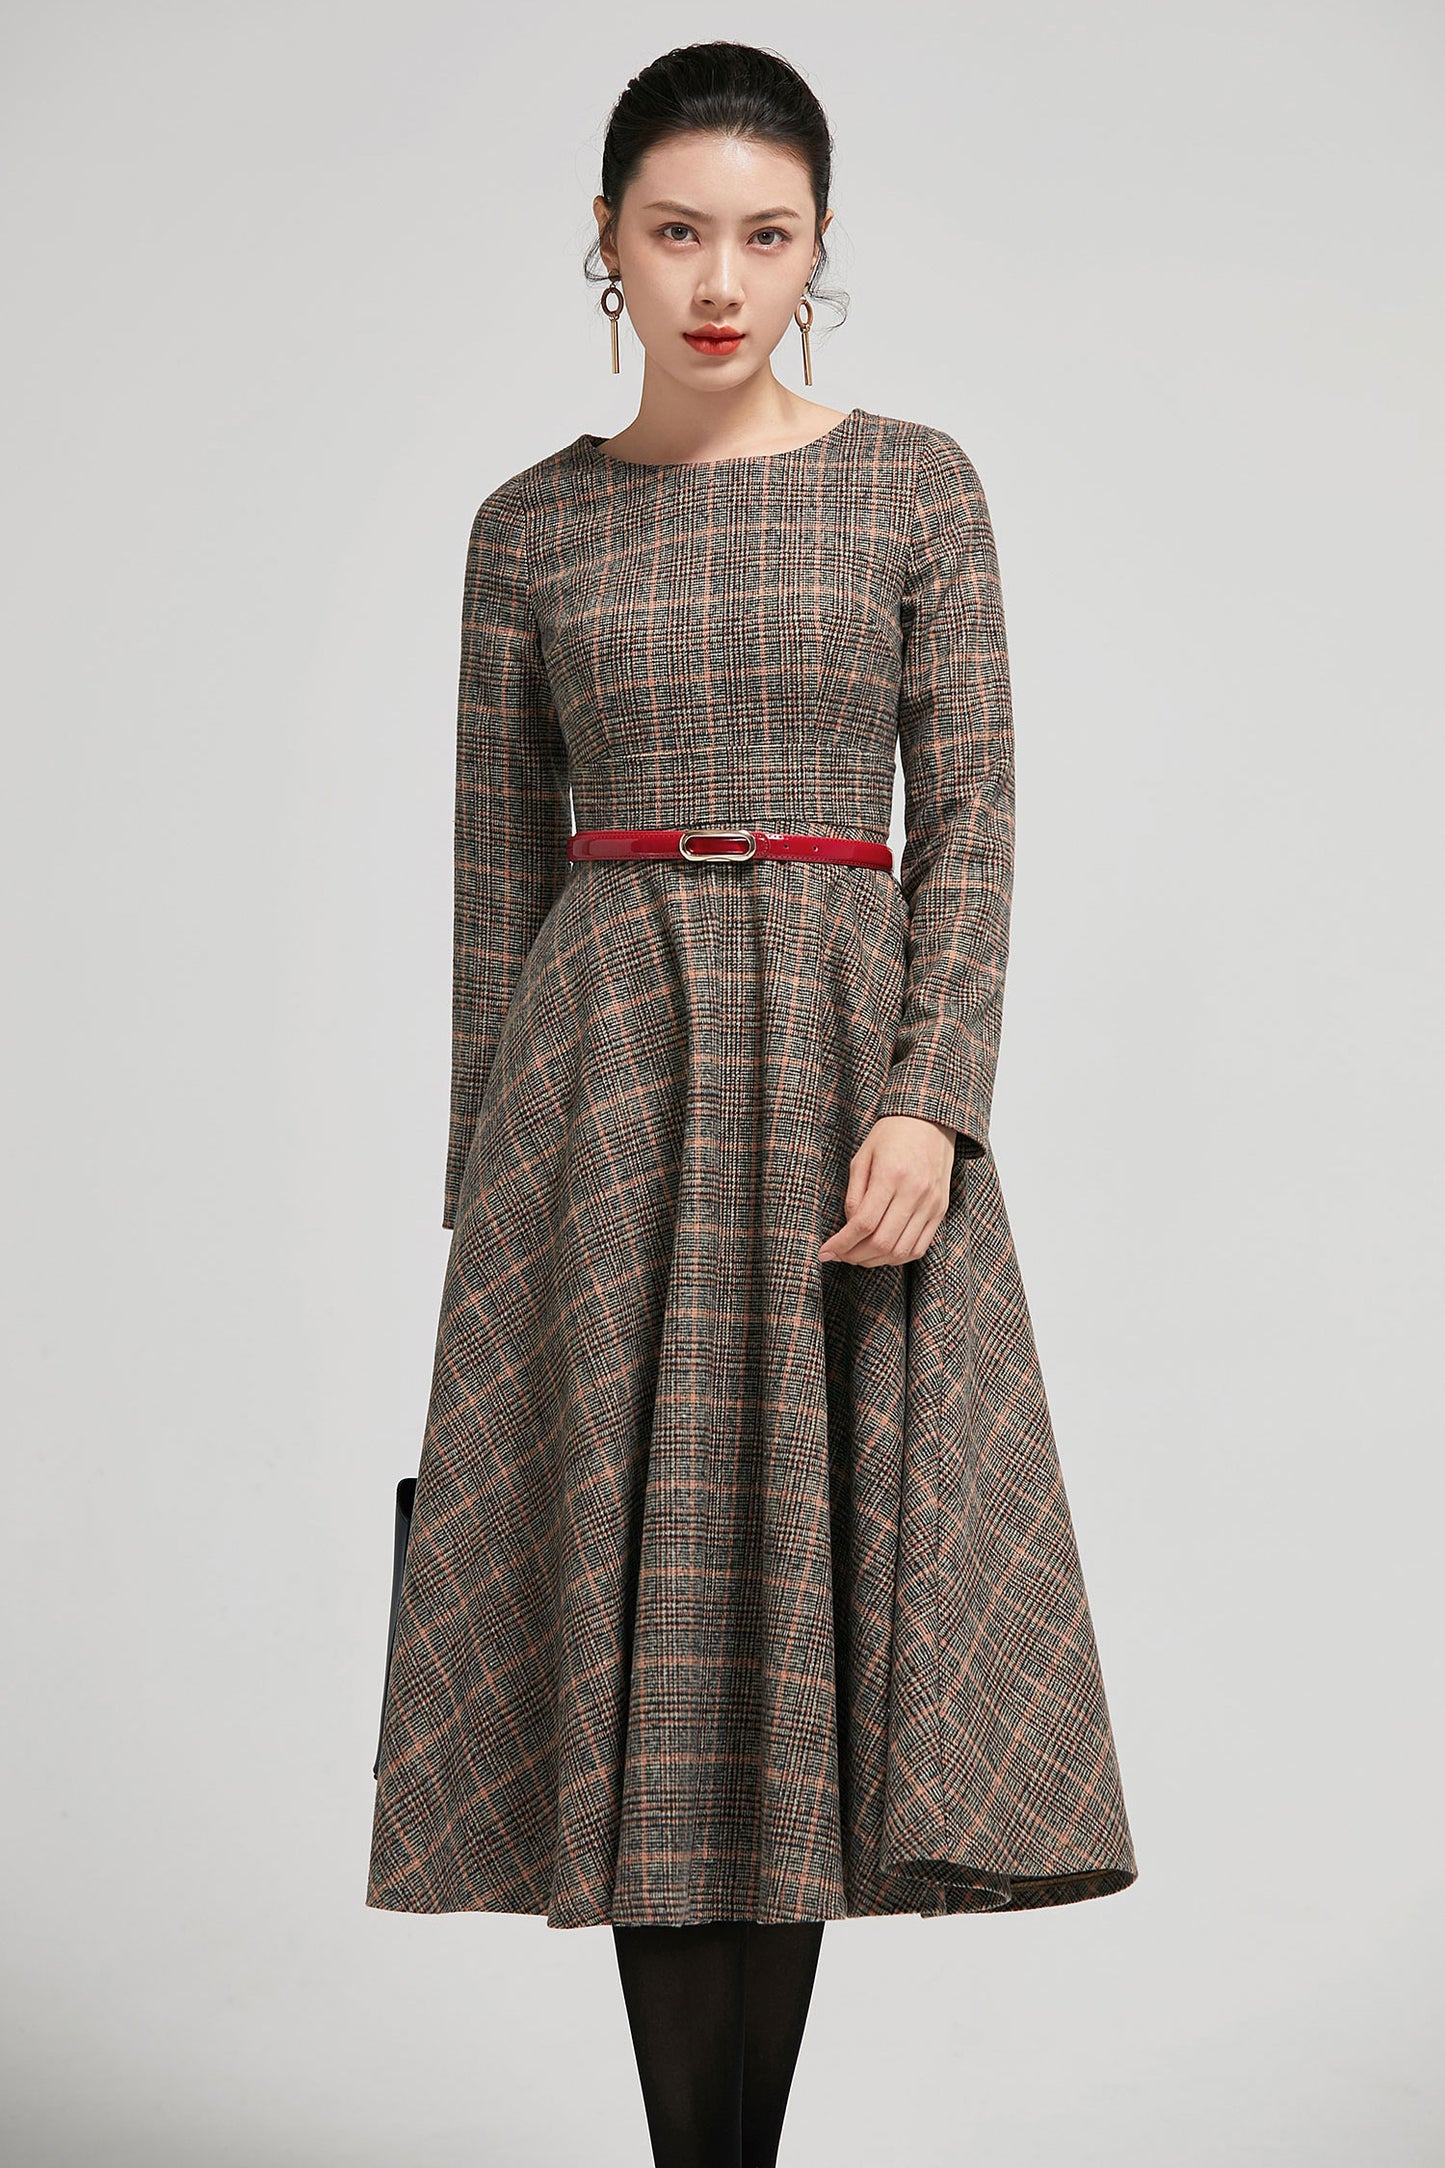 long sleeves Plaid Wool dress vintage 2293